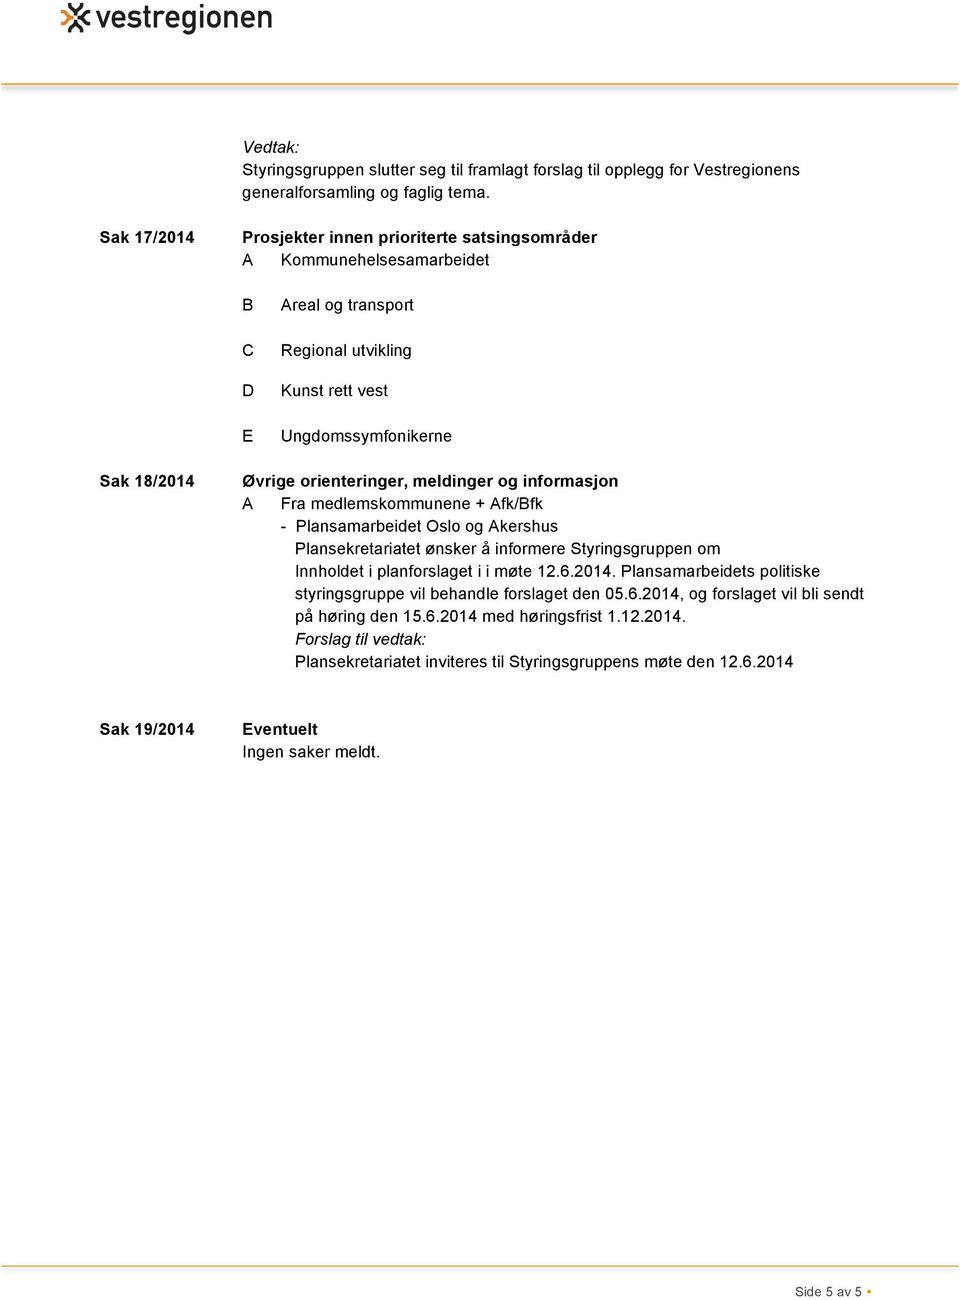 meldinger og informasjon A Fra medlemskommunene + Afk/Bfk - Plansamarbeidet Oslo og Akershus Plansekretariatet ønsker å informere Styringsgruppen om Innholdet i planforslaget i i møte 12.6.2014.